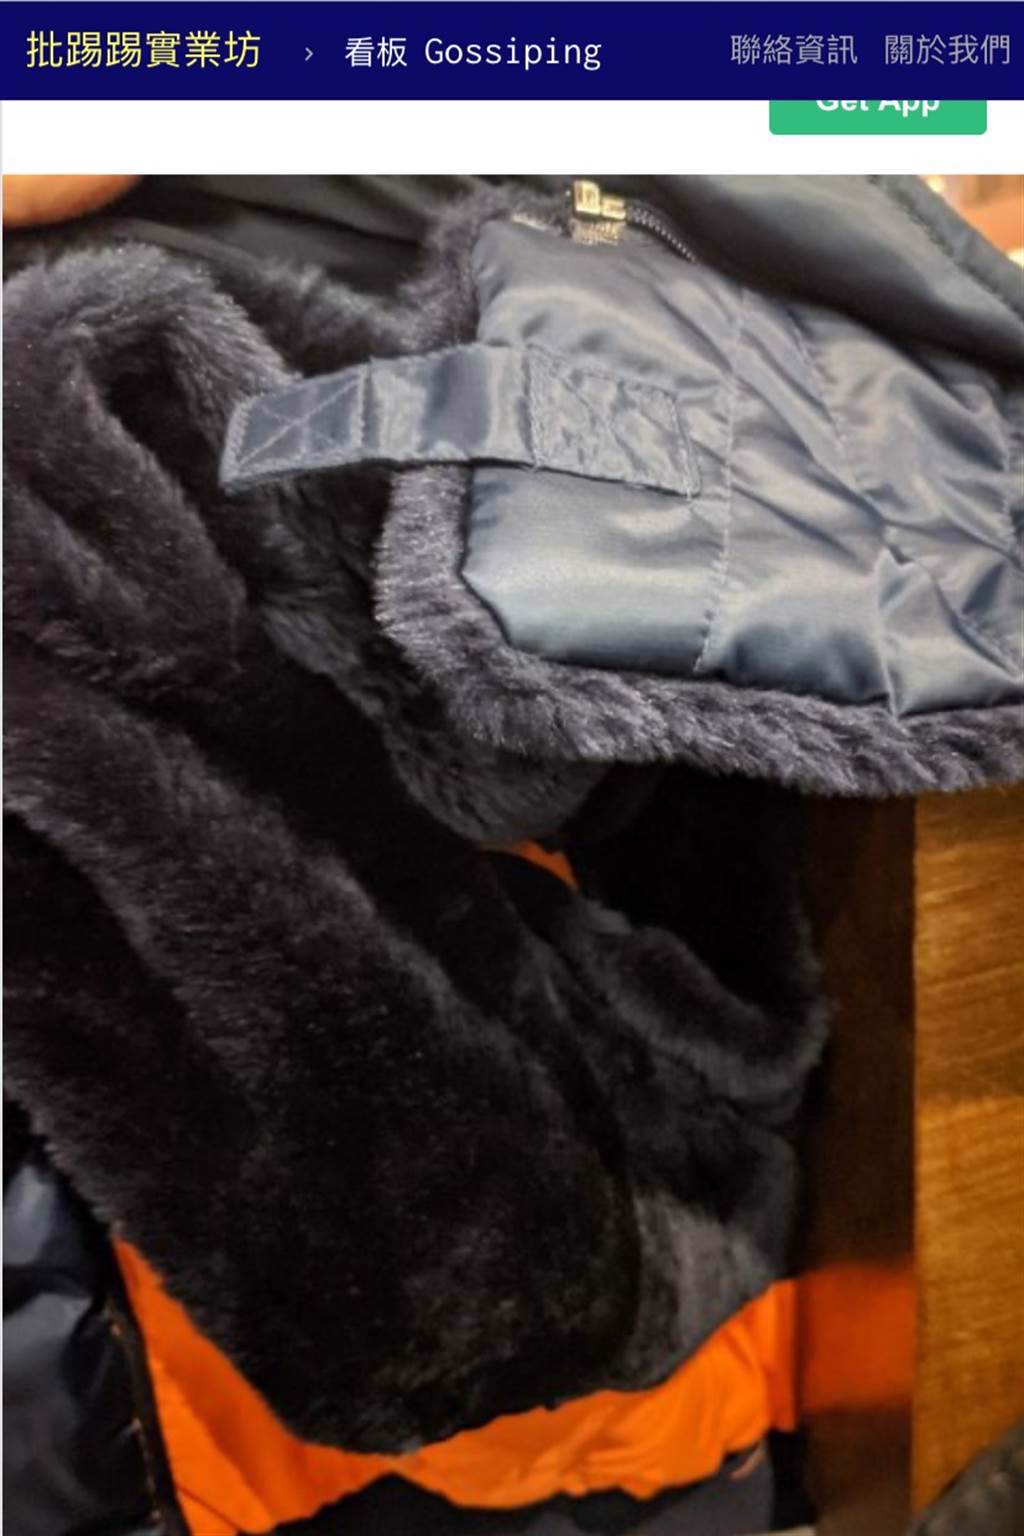 這款空軍外套，內裡及領子部分皆有鋪毛設計，看起來相當保暖。(圖擷取自ptt)